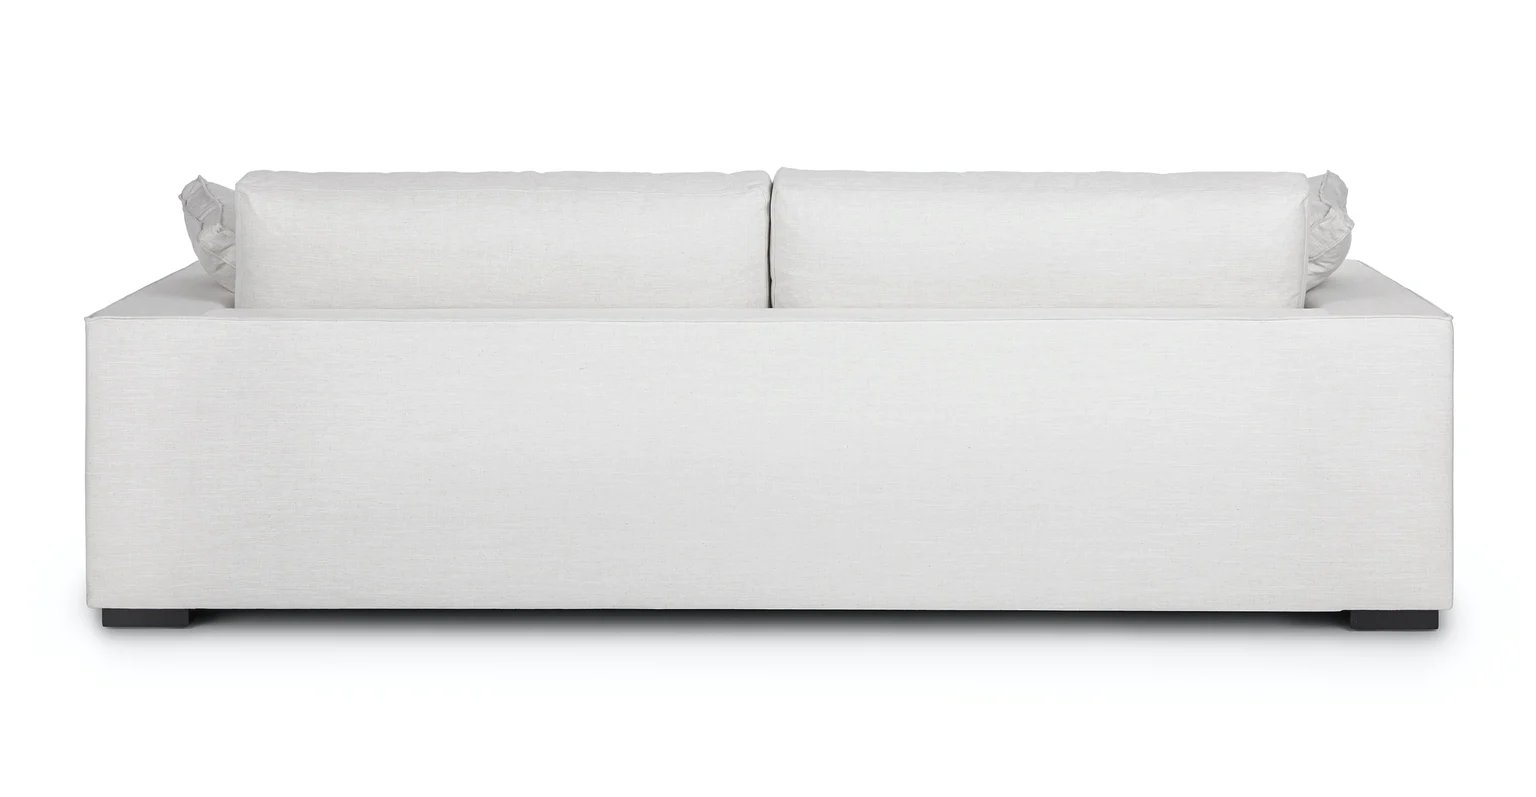 Sitka Sofa, Quartz White - Image 2